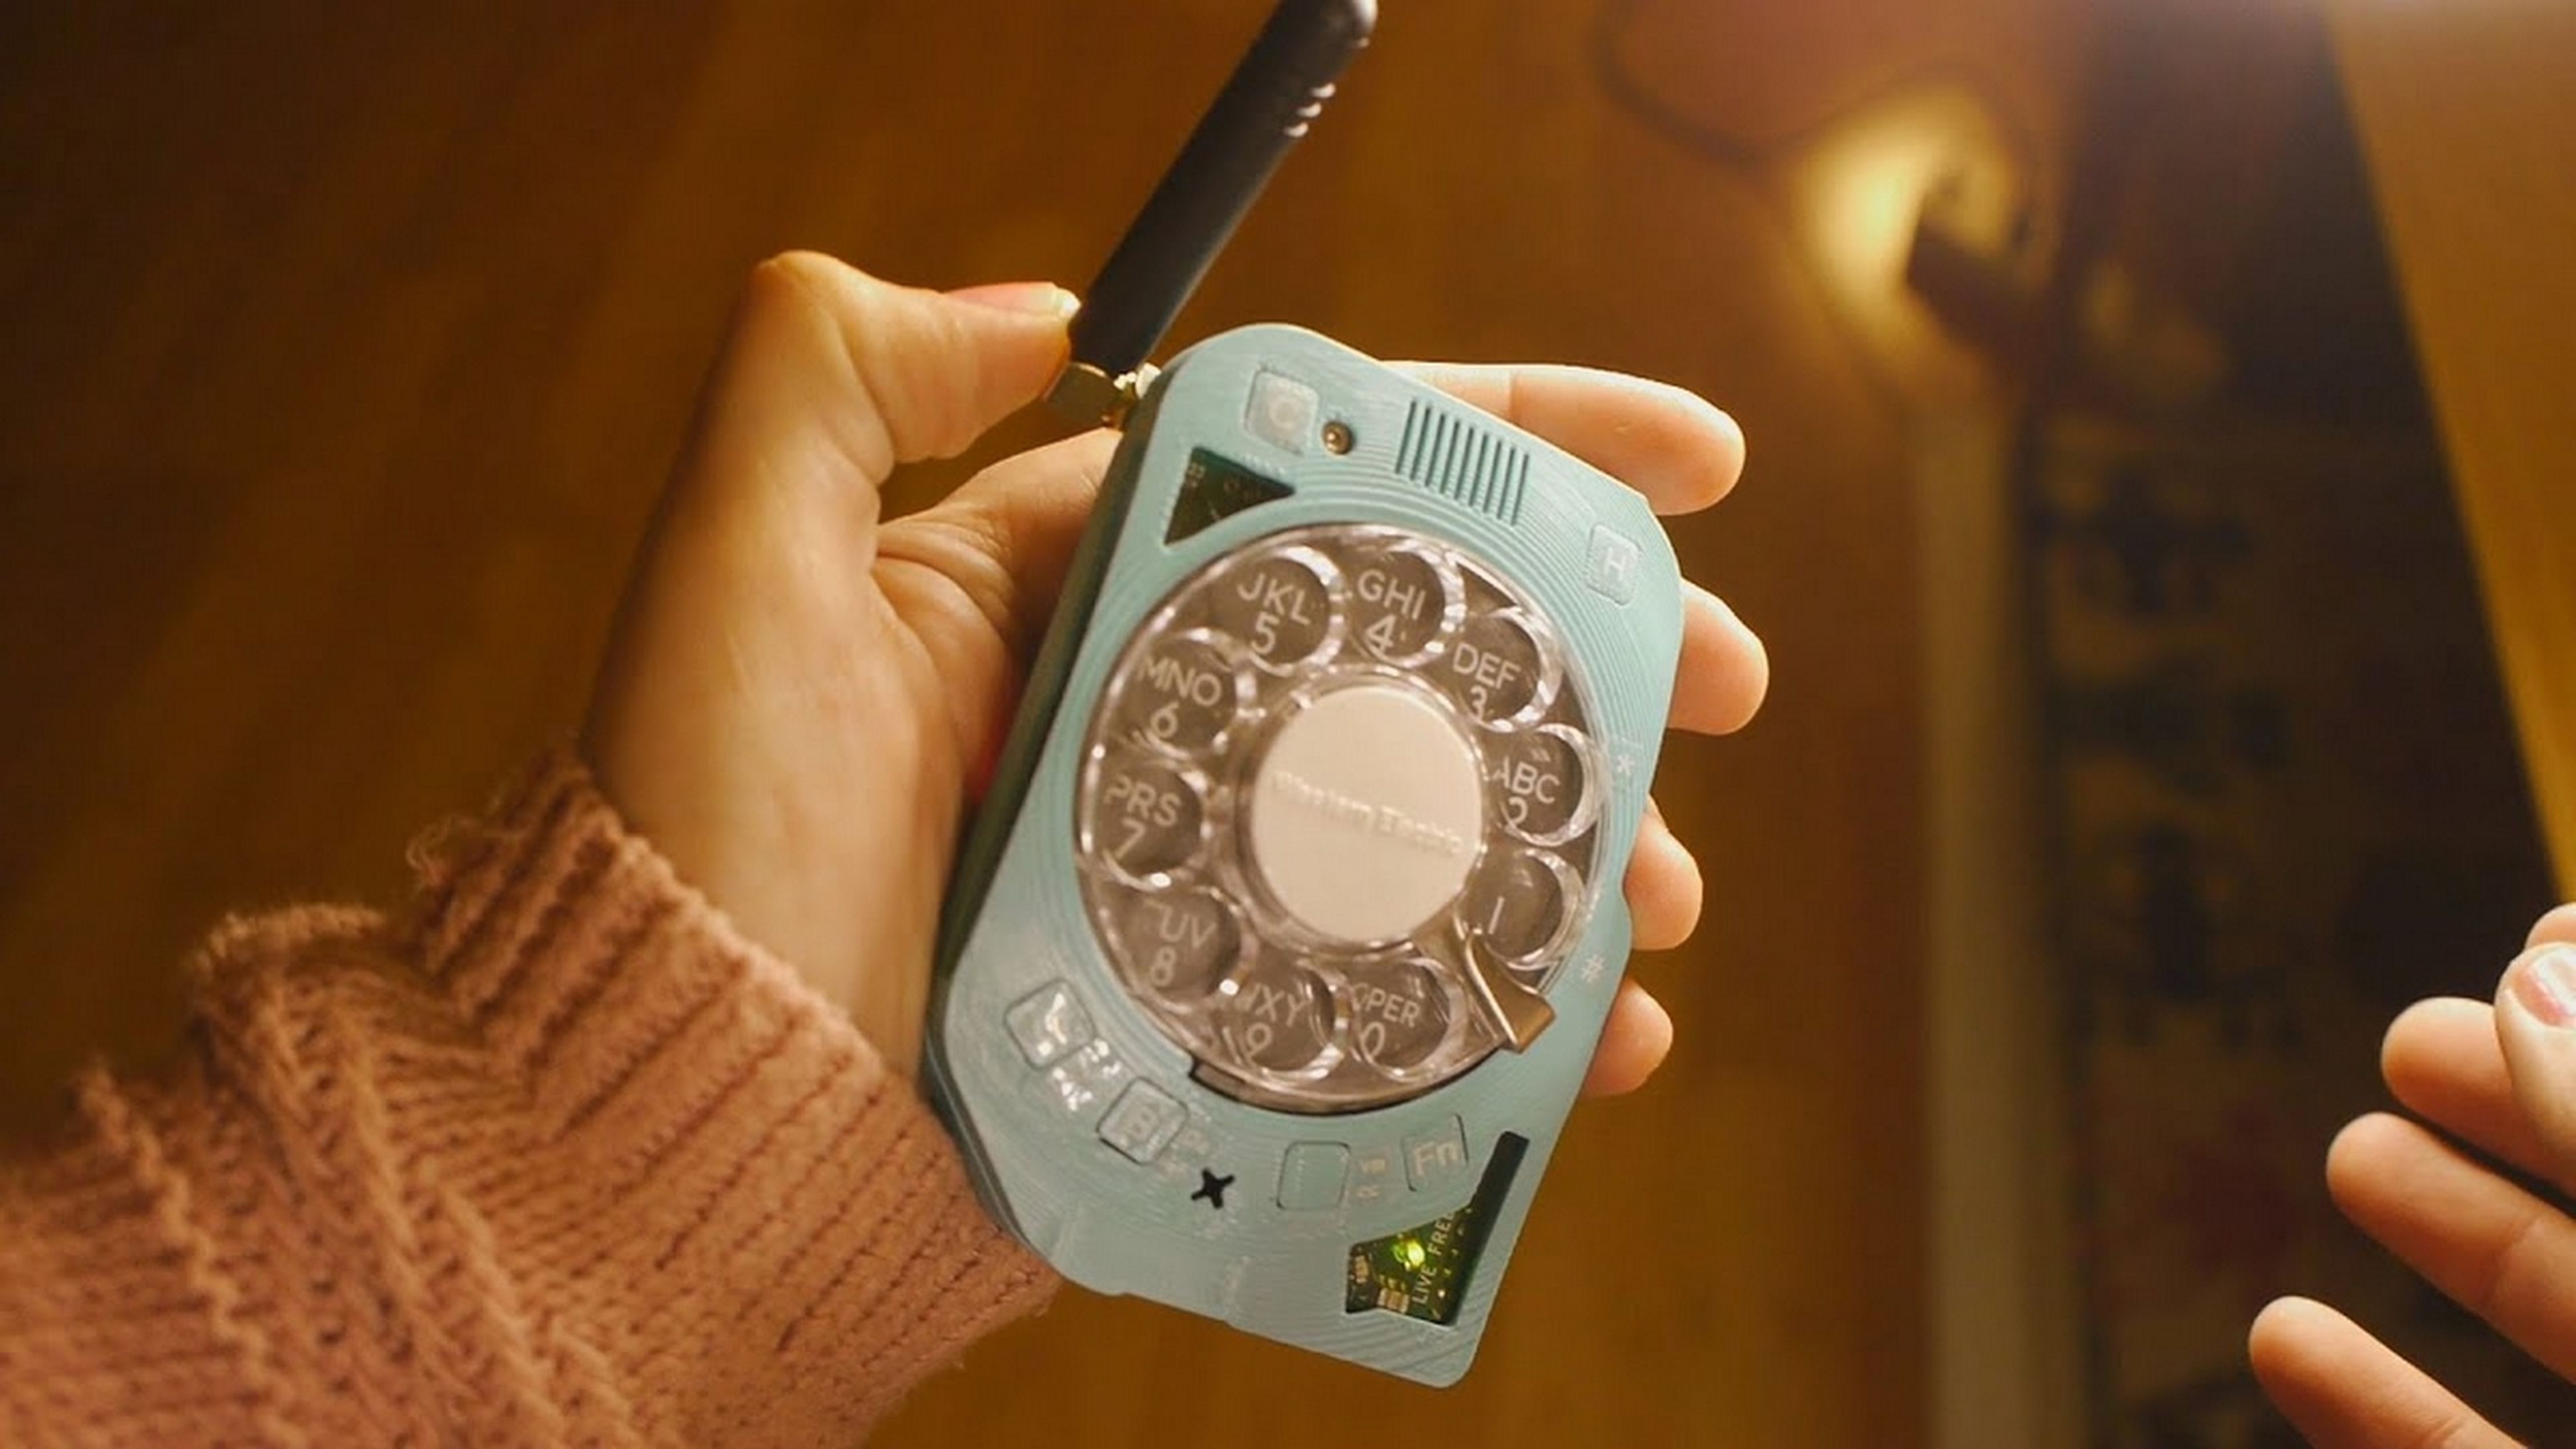 El móvil con marcador analógico giratorio y 4G